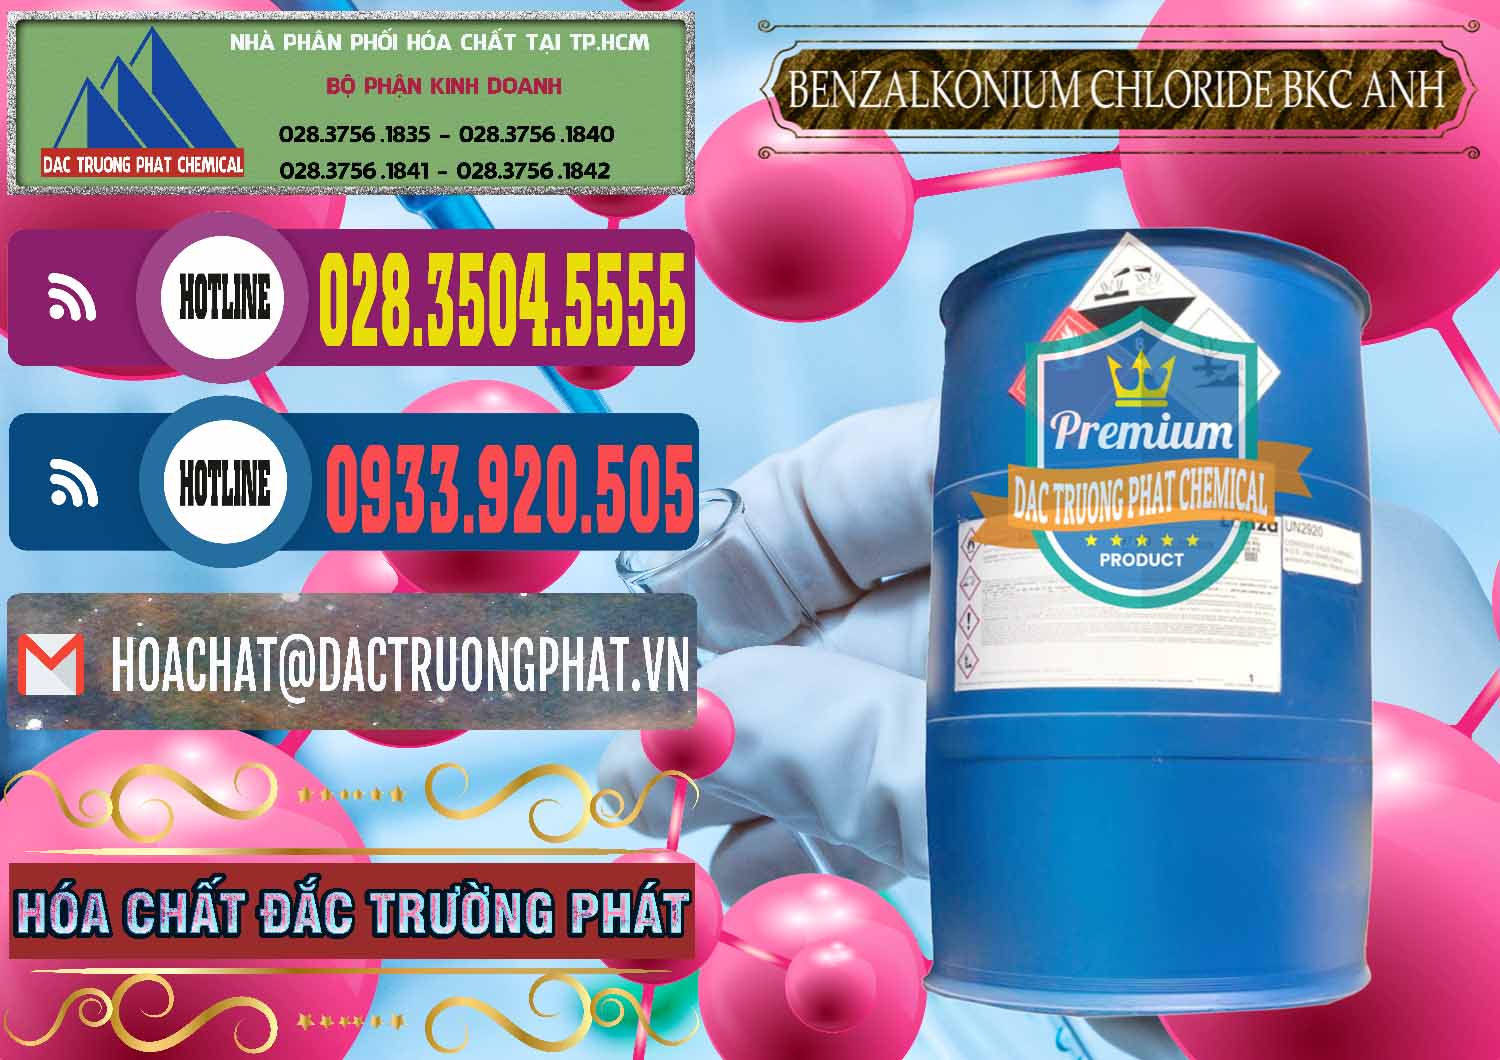 Đơn vị chuyên bán - cung ứng BKC - Benzalkonium Chloride 80% Anh Quốc Uk Kingdoms - 0457 - Cty phân phối _ kinh doanh hóa chất tại TP.HCM - muabanhoachat.com.vn